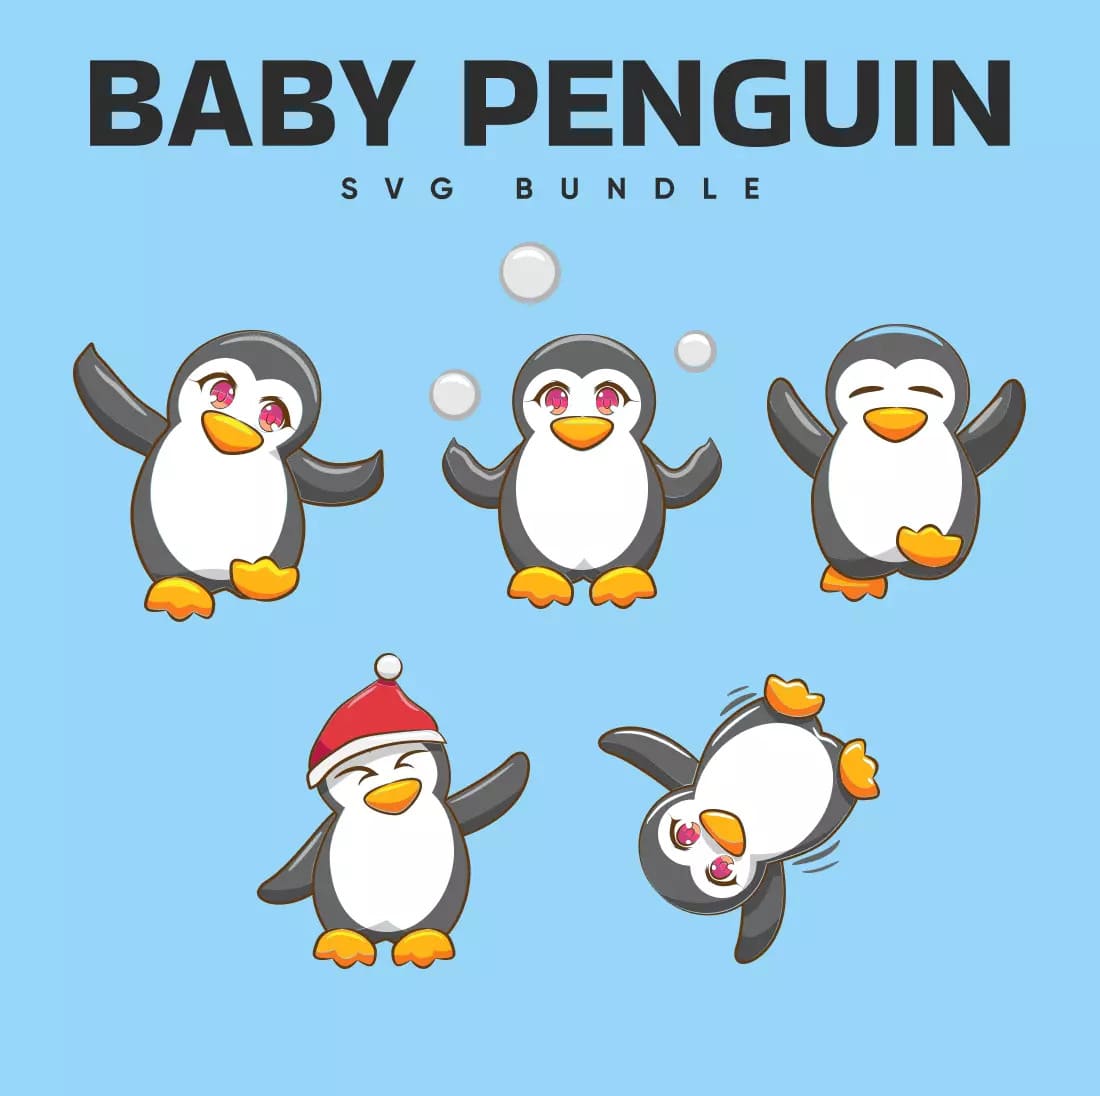 Baby penguin svg bundle.